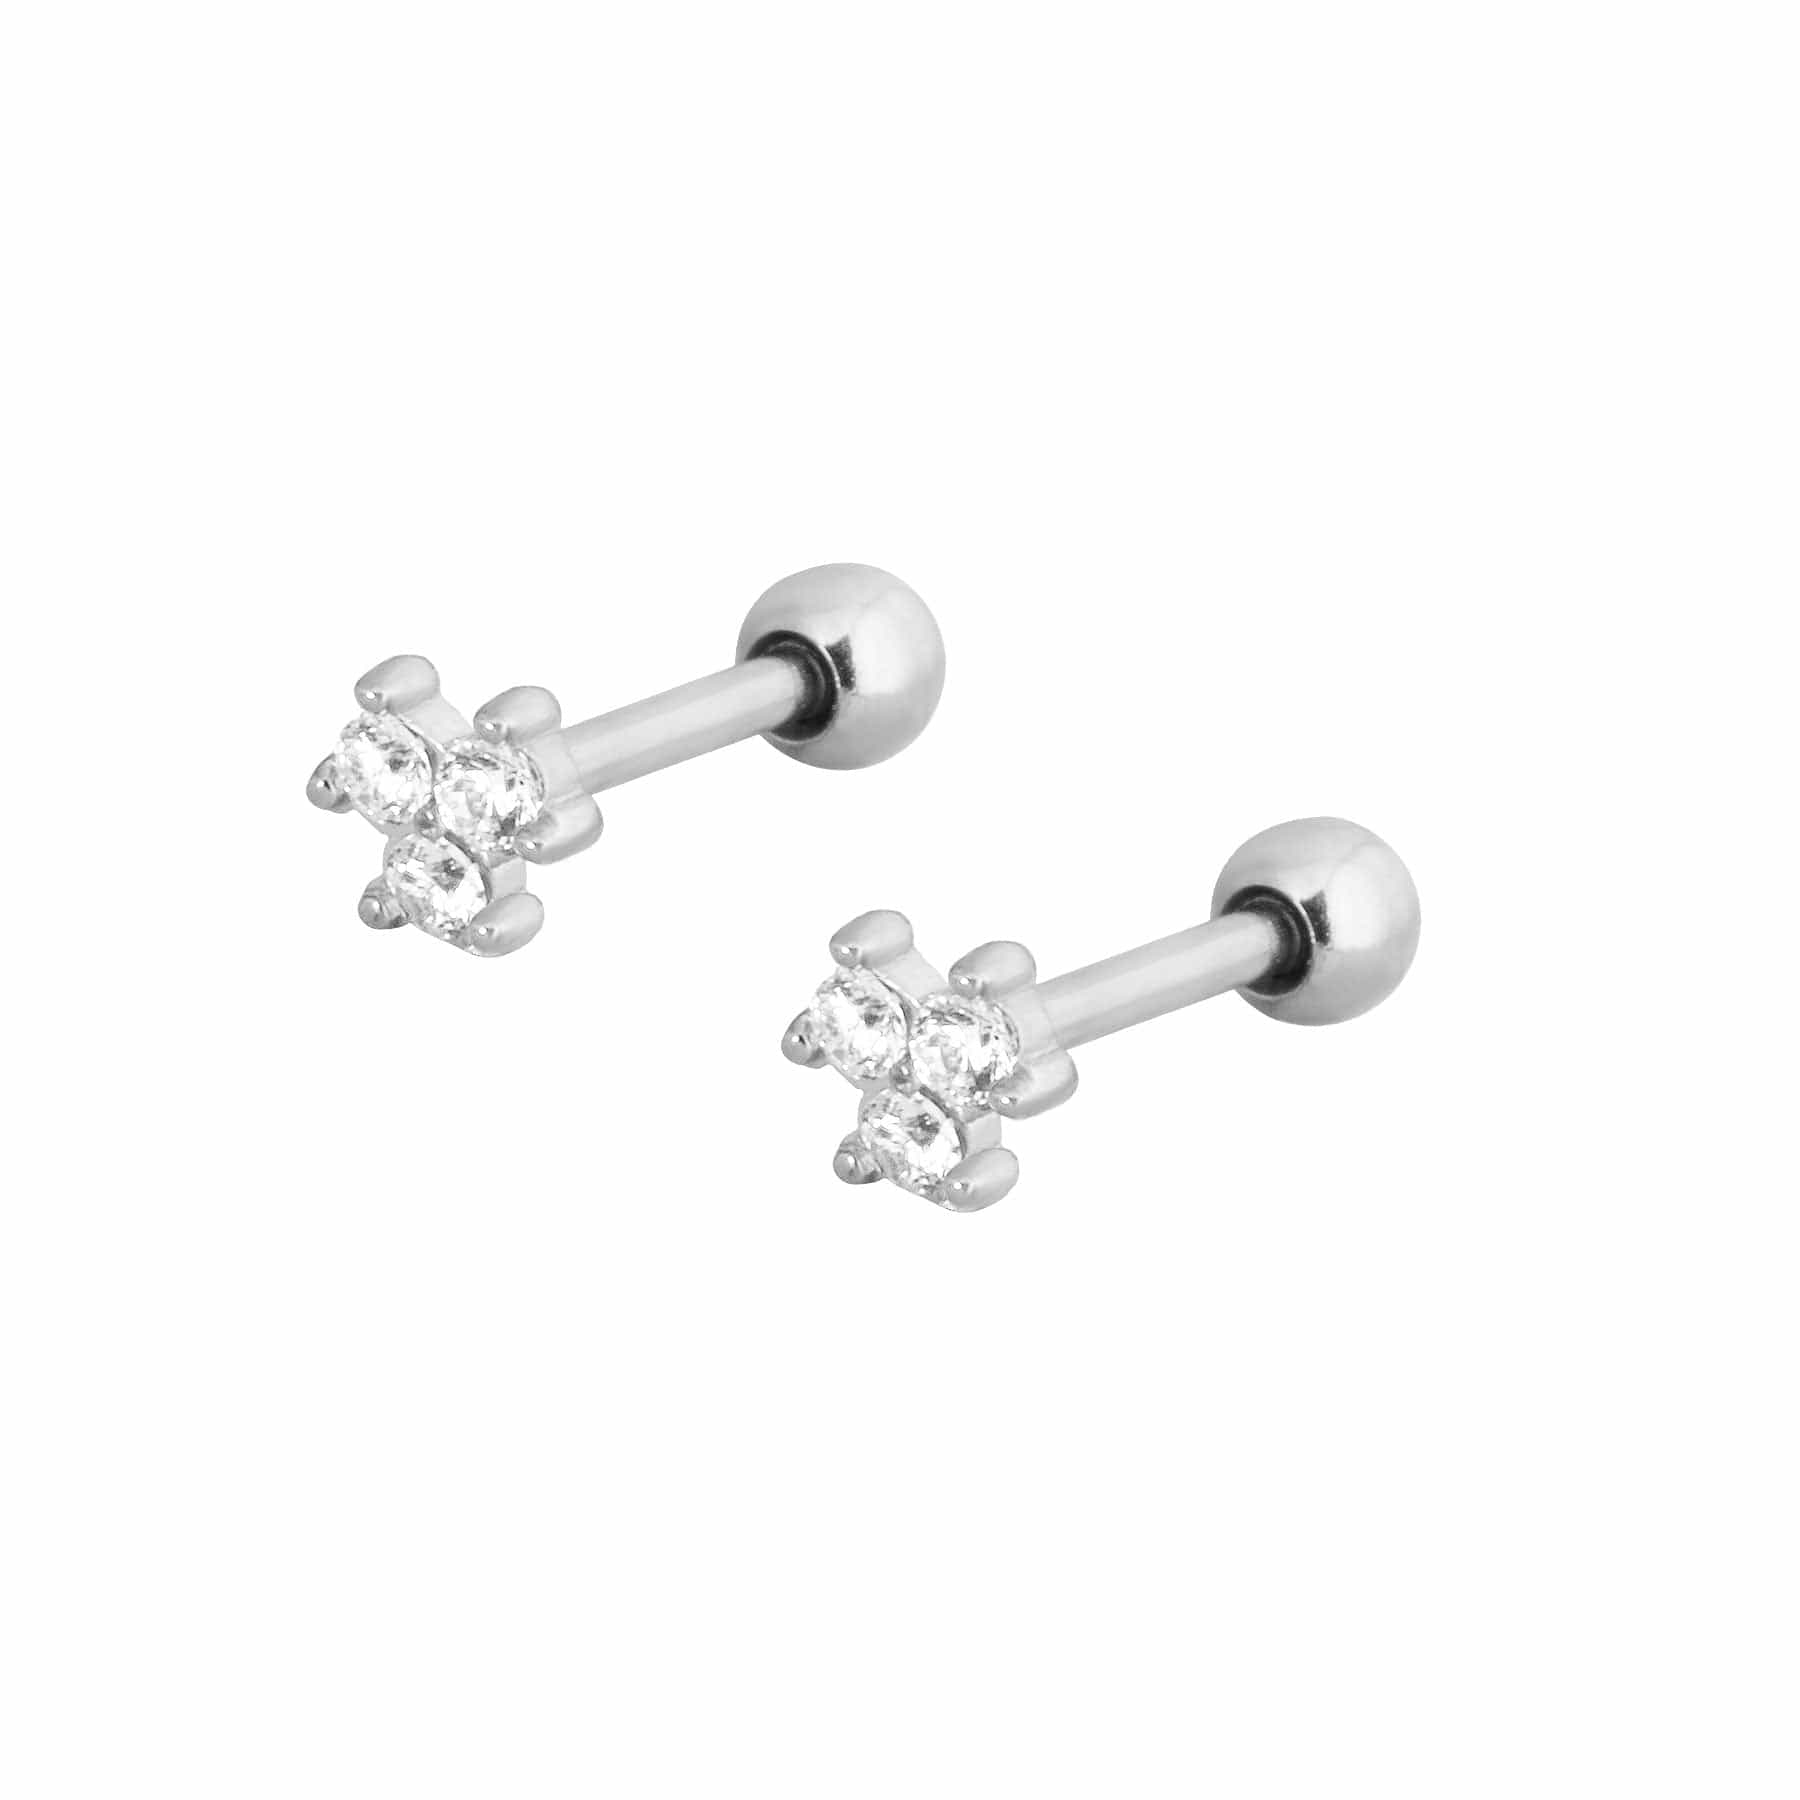 BohoMoon Stainless Steel Callie Stud Earrings Silver